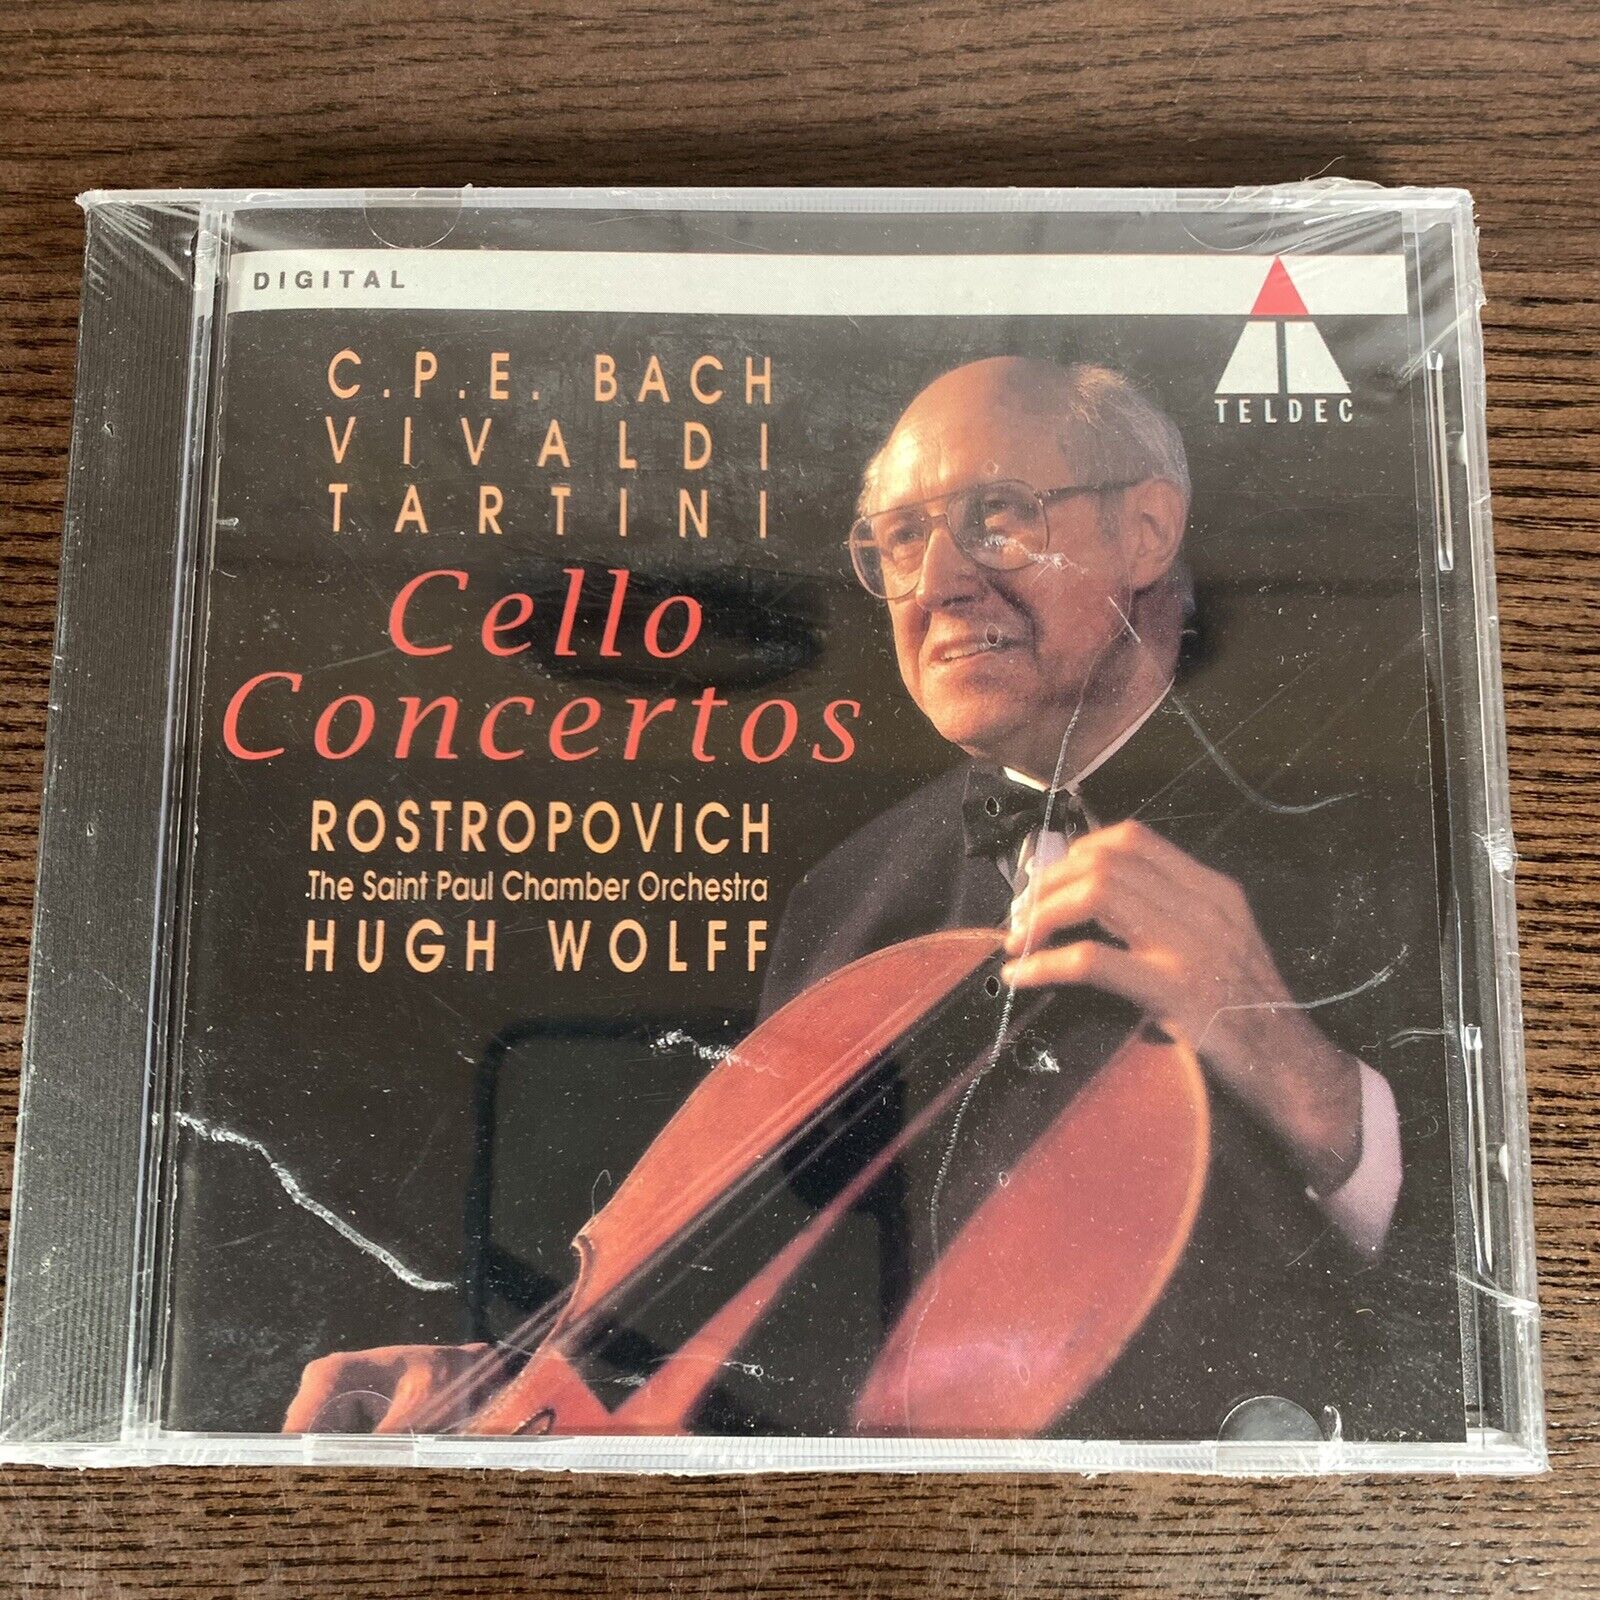 C.P.E. Bach Vivaldi Tartini Cello Concertos CD Sealed Cracked Case 1993